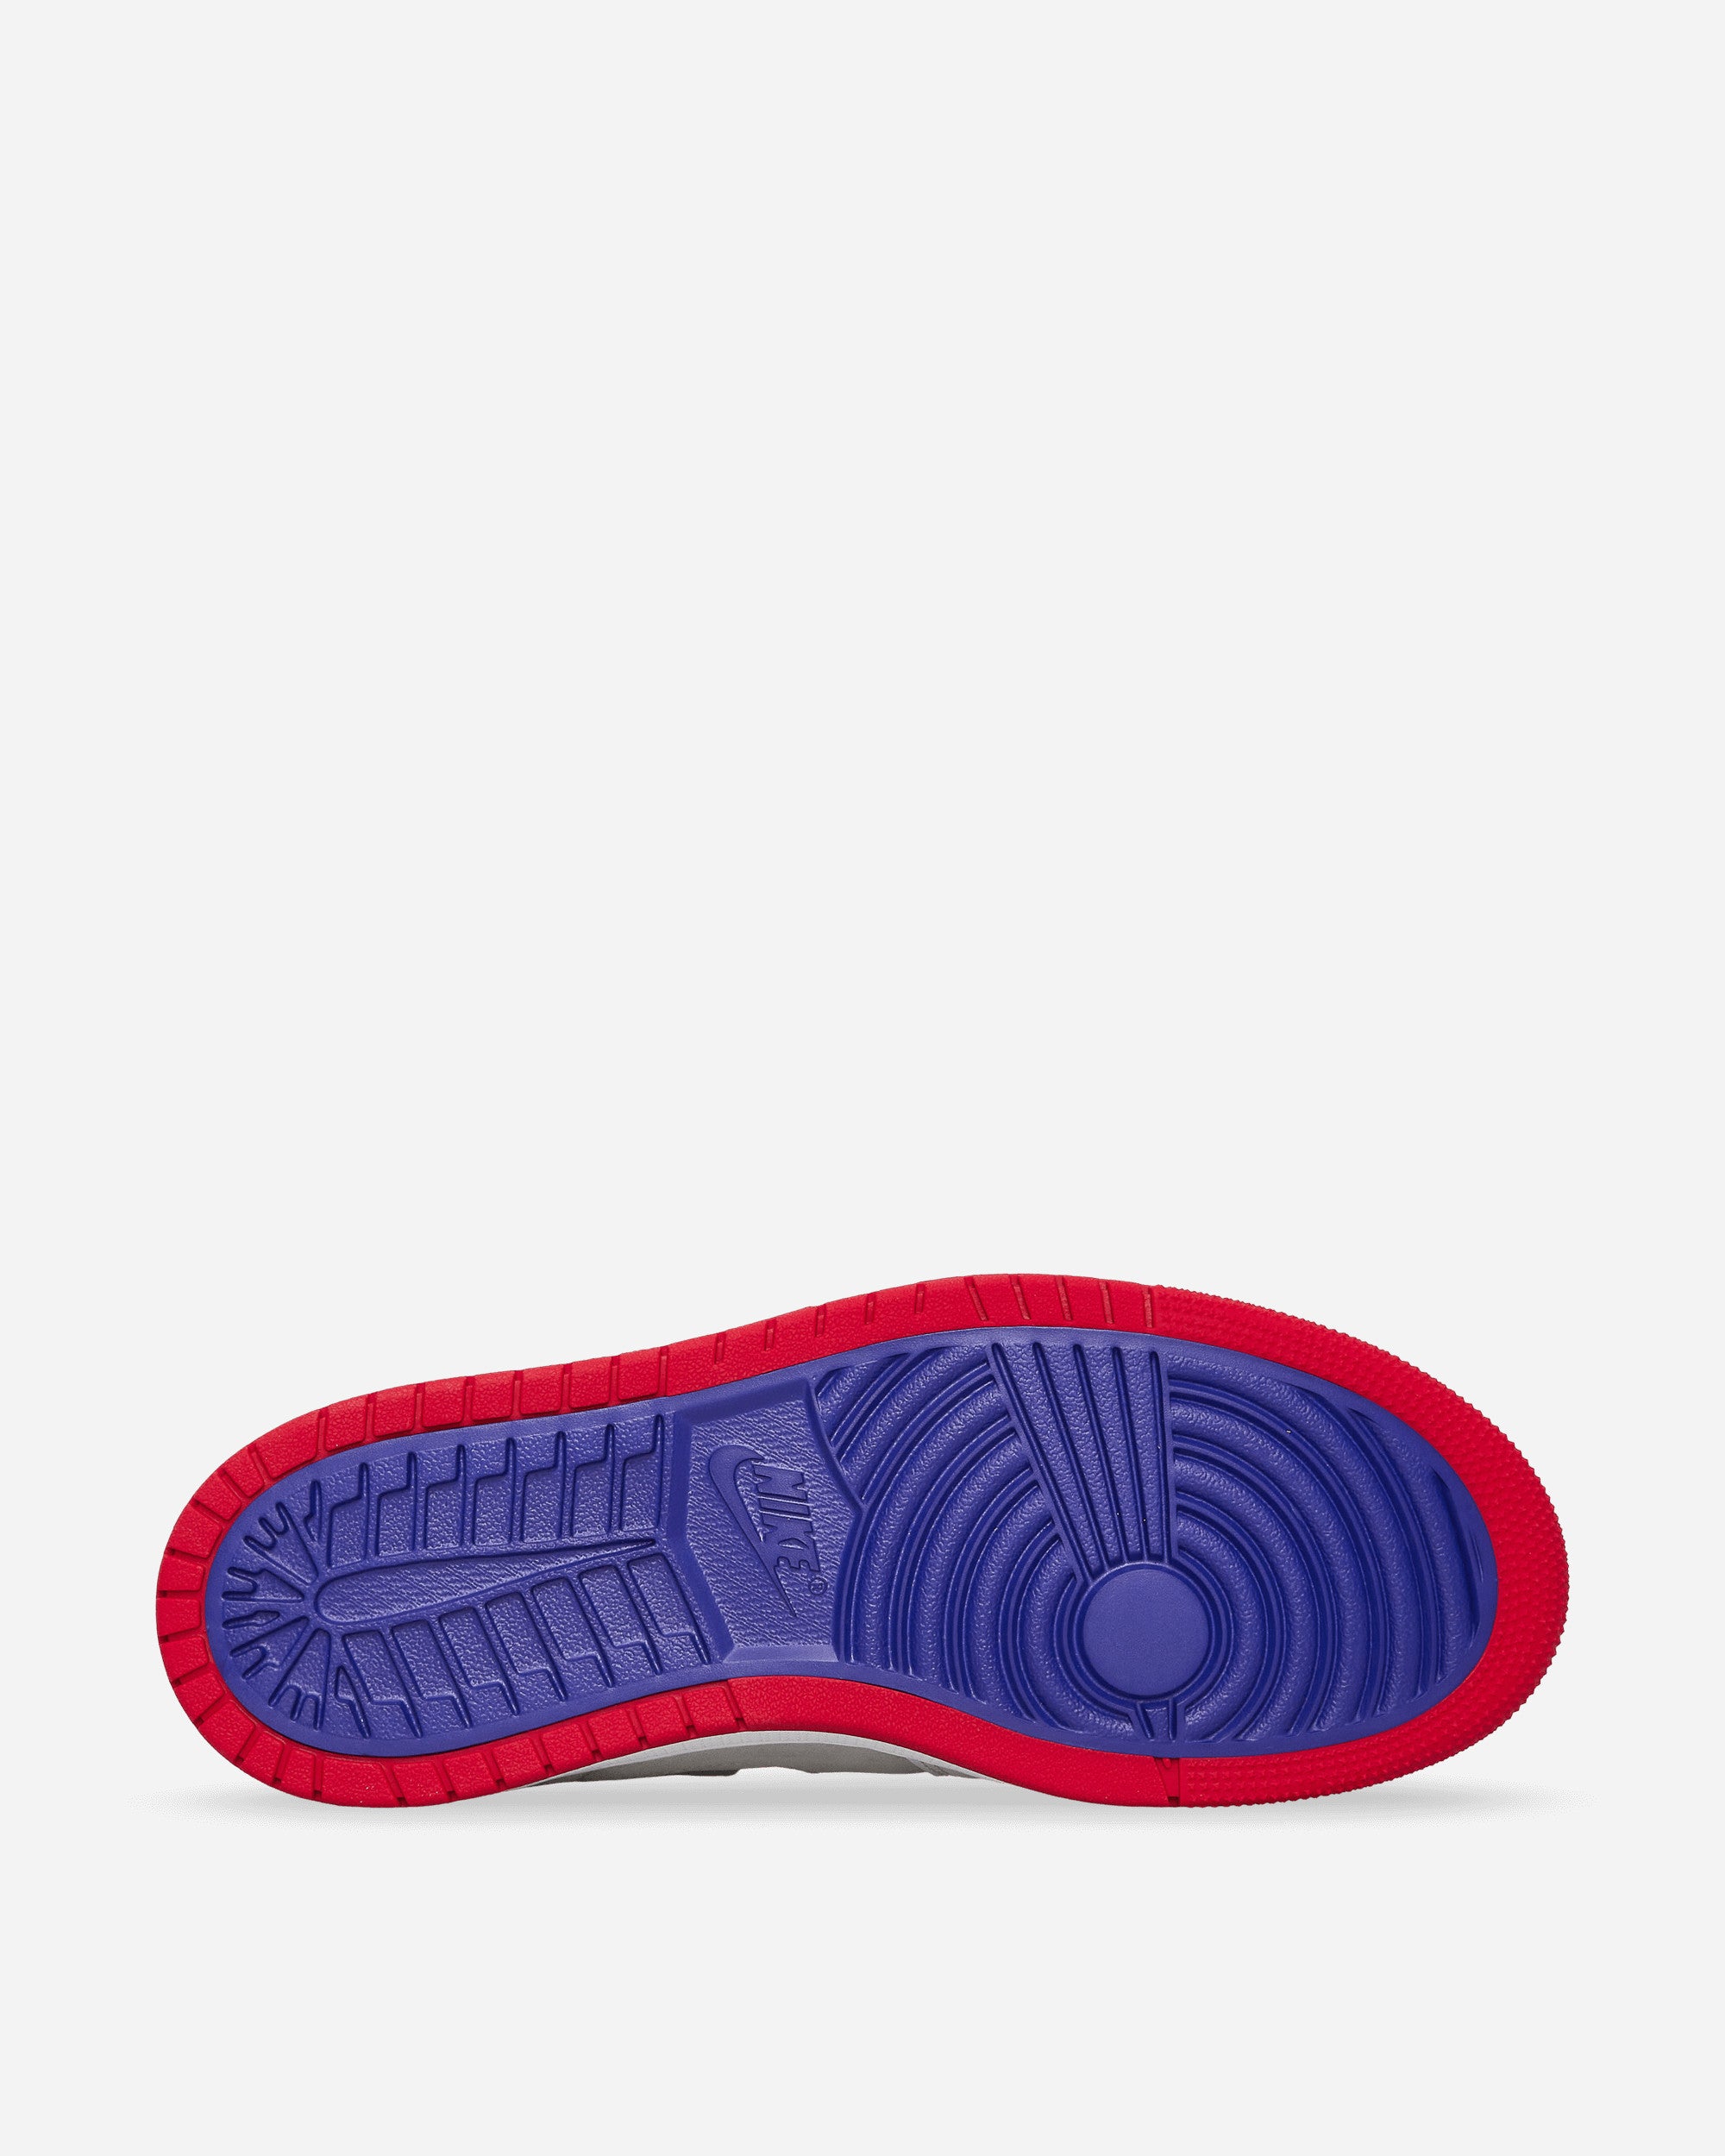 Nike Jordan Air 1 Zoom Cmft White/True Red Sneakers High CT0978-100